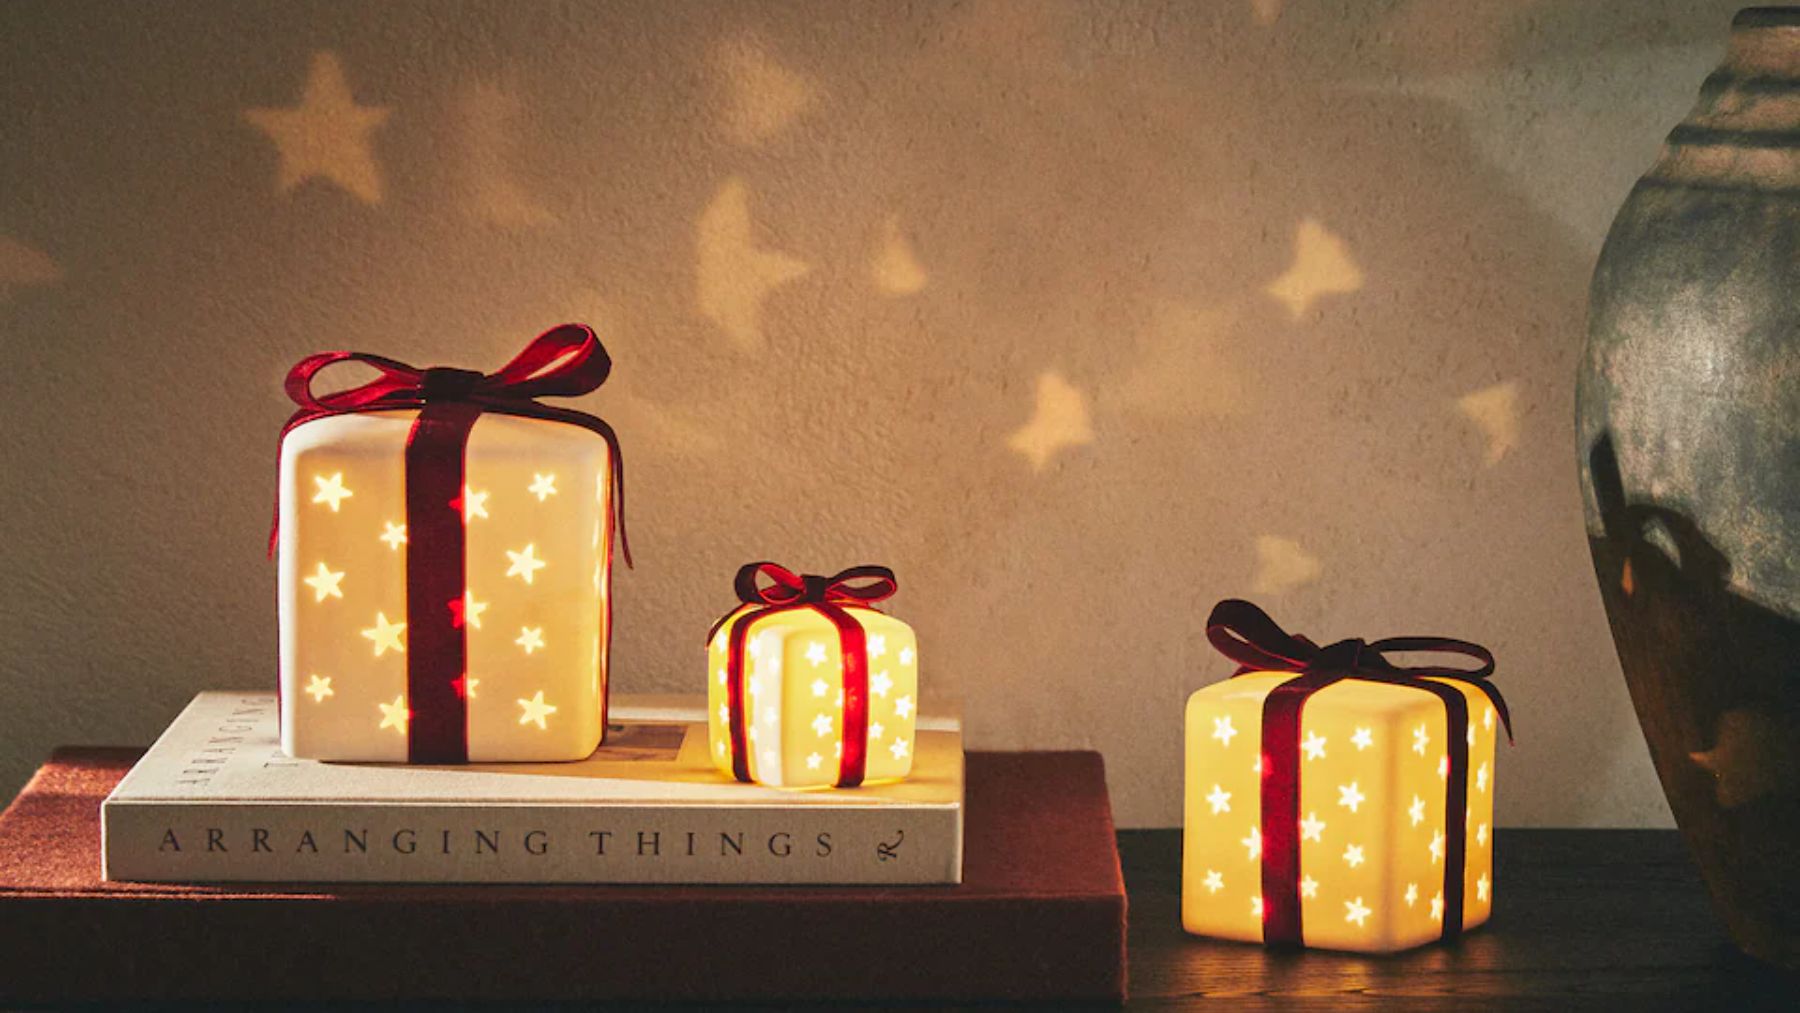 Los básicos de Zara Home para Navidad que te van a enamorar